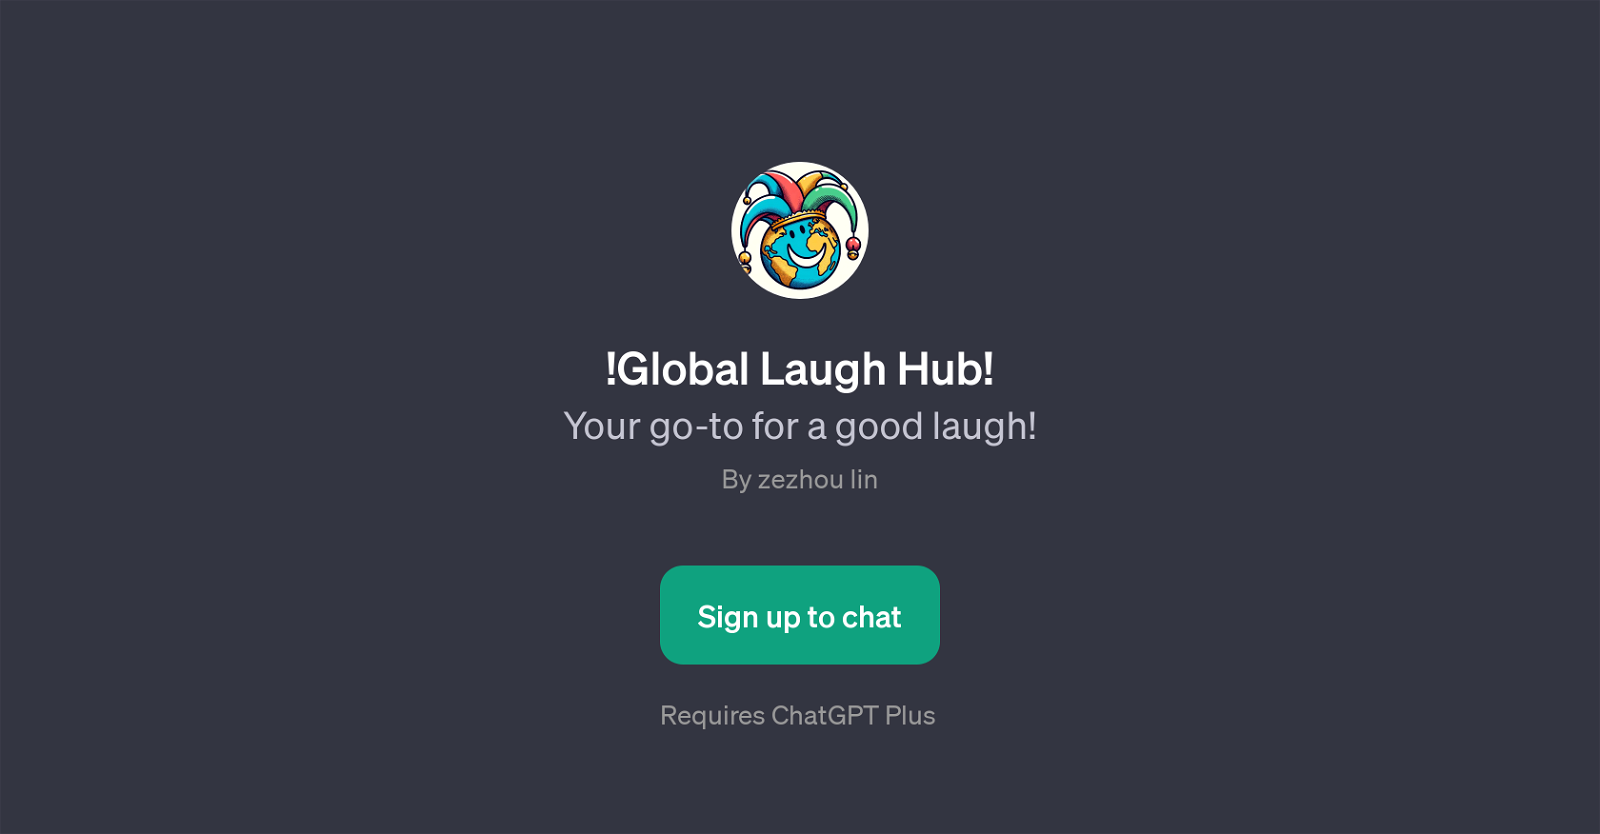 !Global Laugh Hub! website